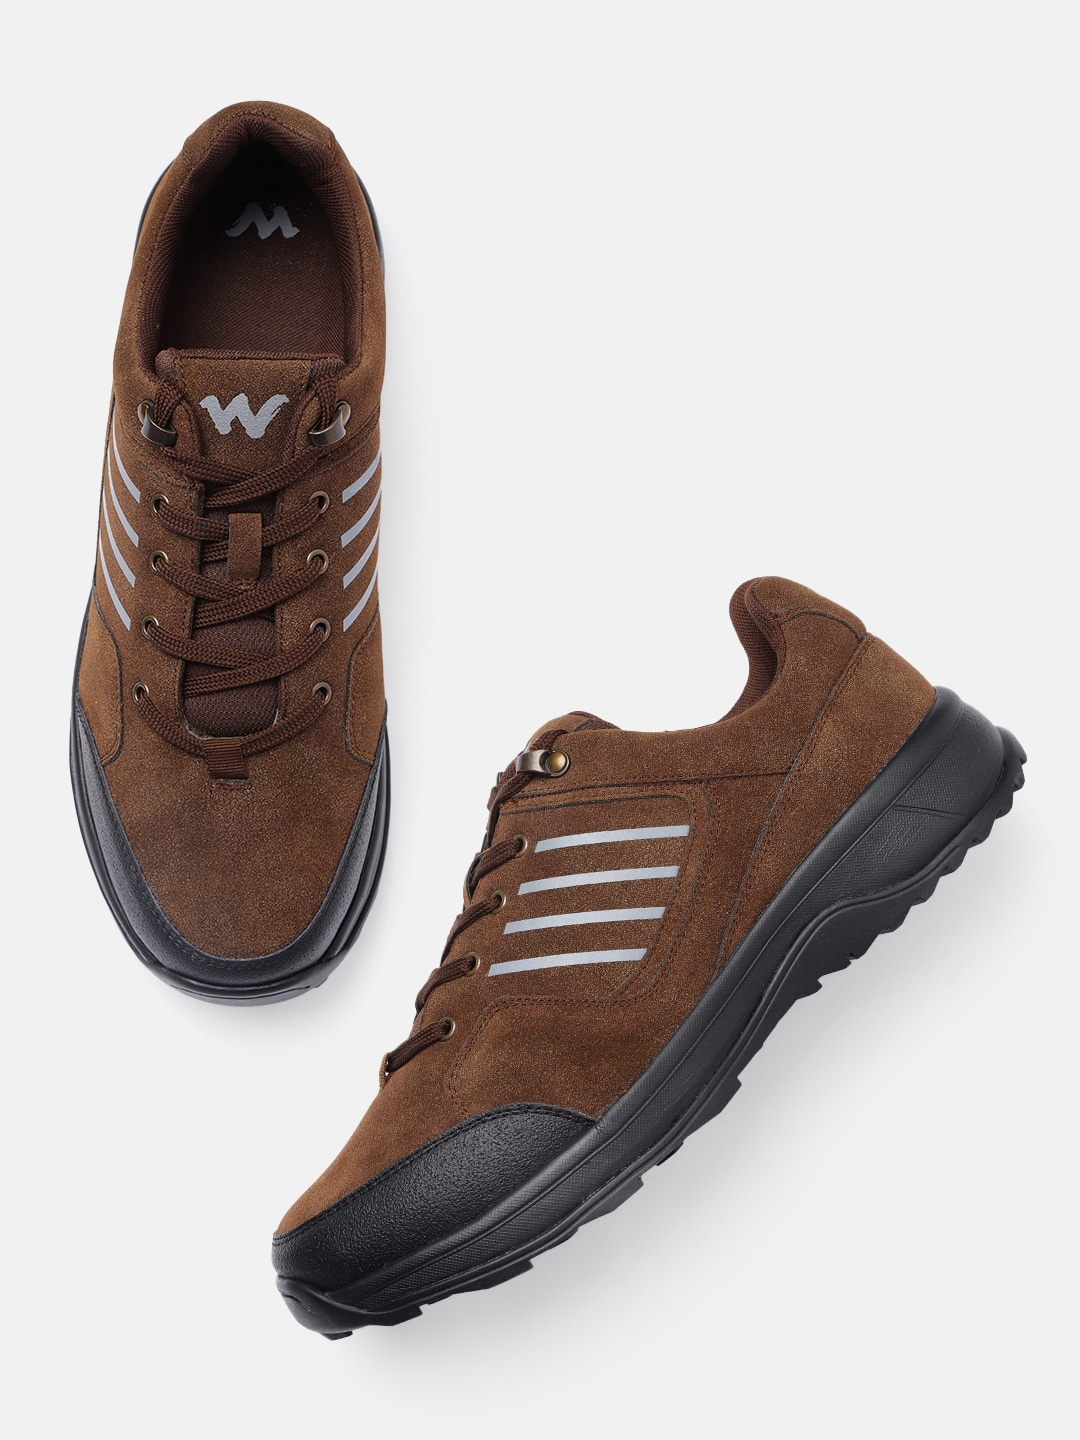 Wildcraft Men Halcon Leather Trekking Shoes